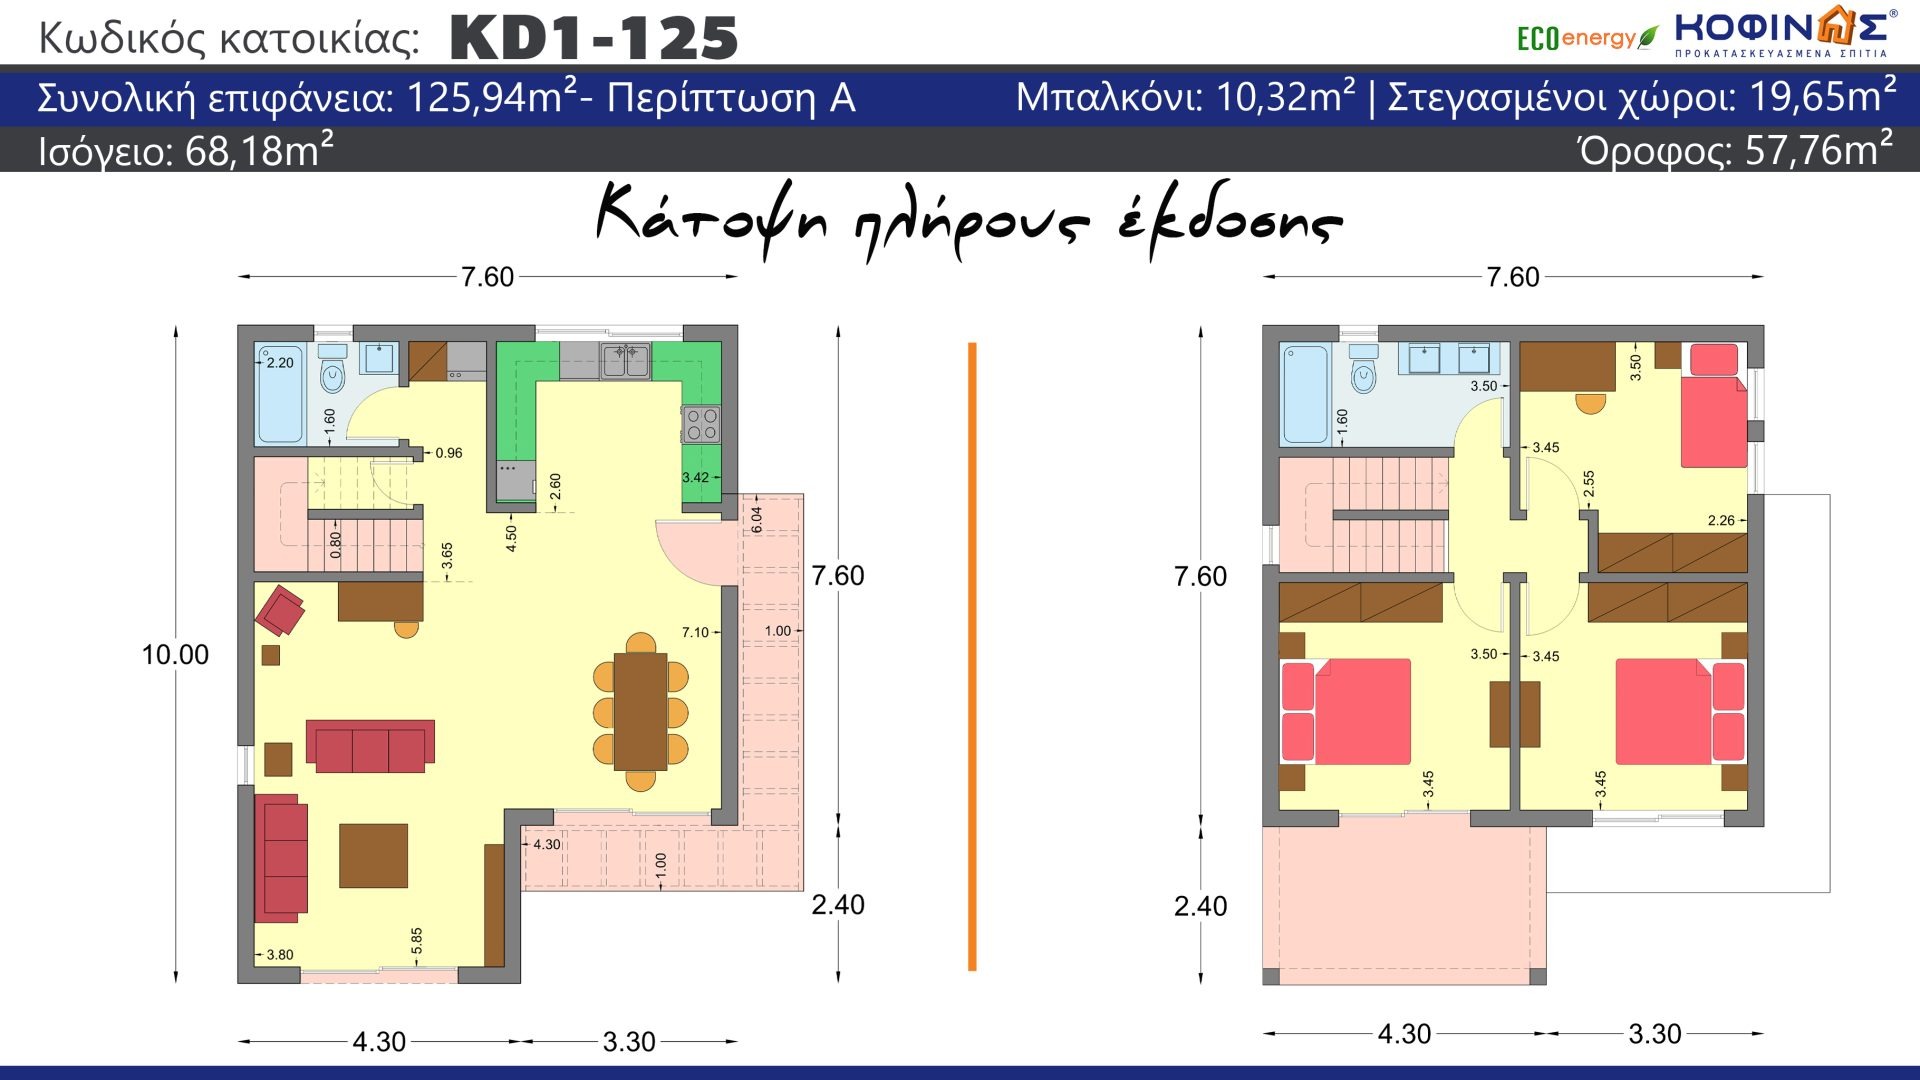 Διώροφη Κατοικία KD1-125, συνολικής επιφάνειας 125,94 τ.μ. , συνολική επιφάνεια στεγασμένων χώρων 19.65 τ.μ., μπαλκόνια 10.32 τ.μ.